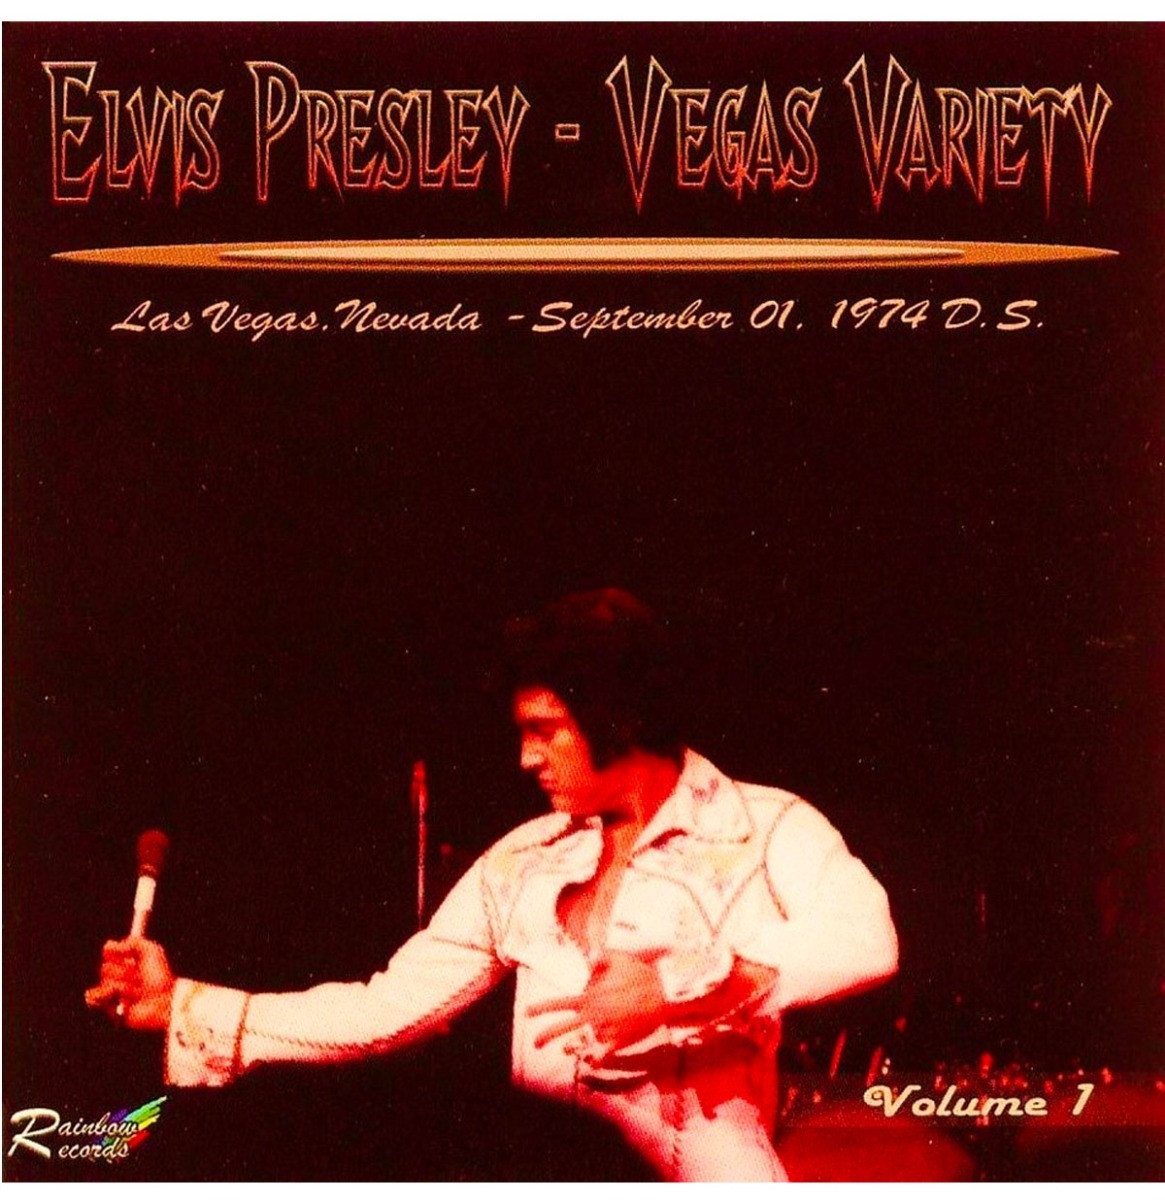 Elvis Presley - Vegas Variety Sept 1 1974 Dinner Show 2-CD